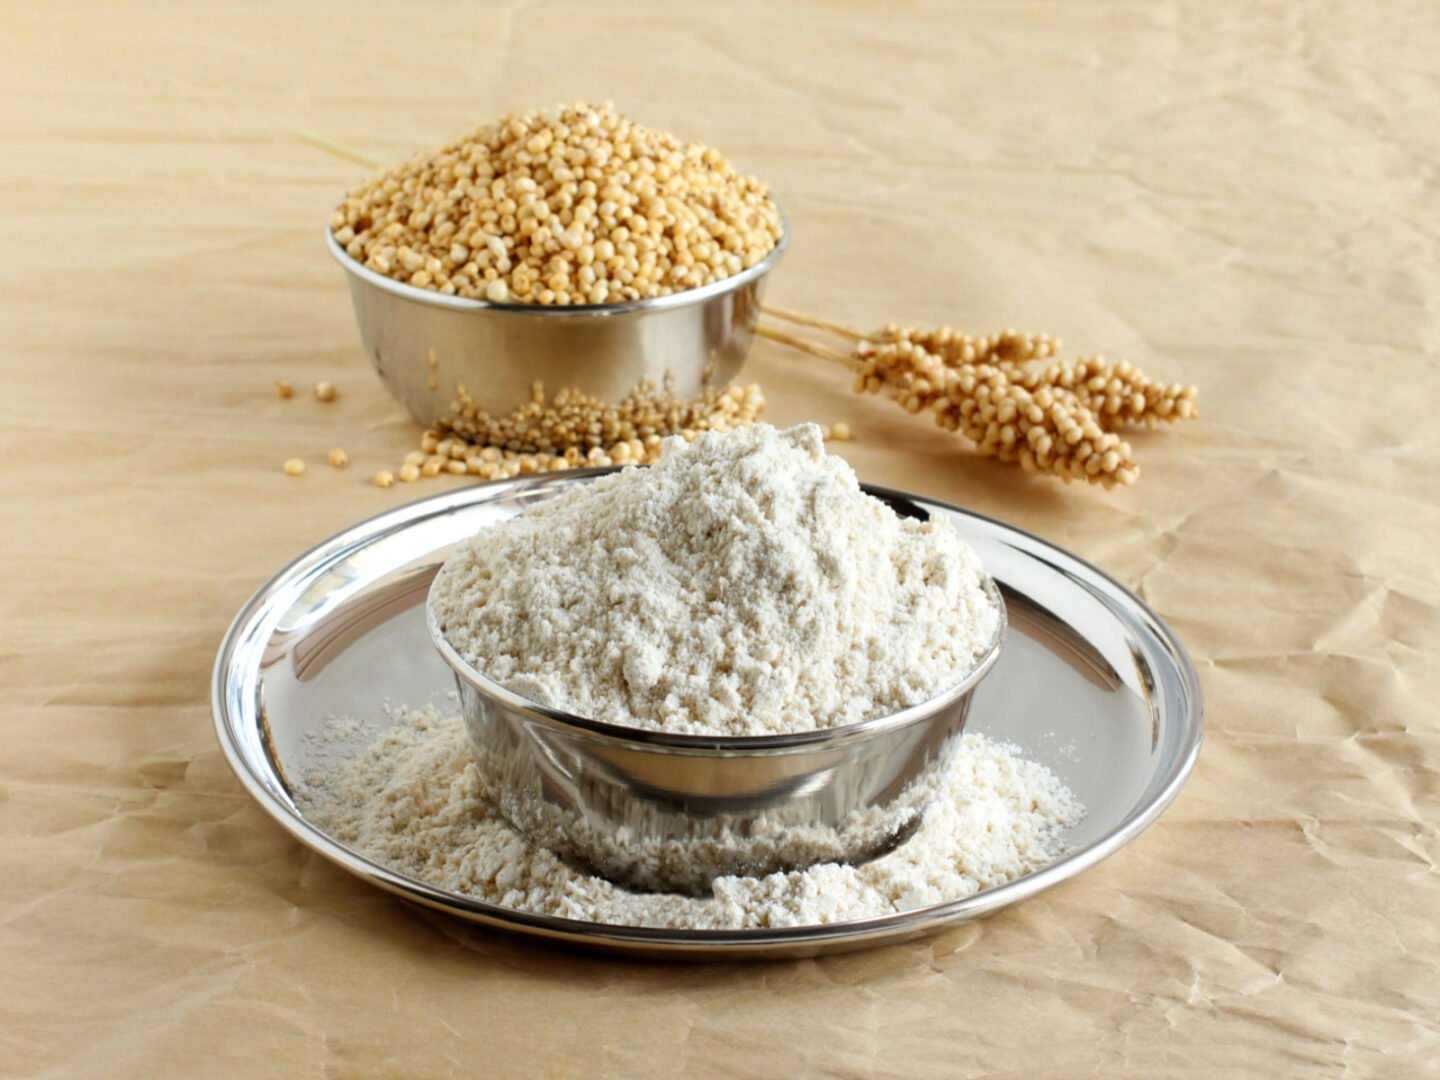 sorghum flour with raw sorghum grains